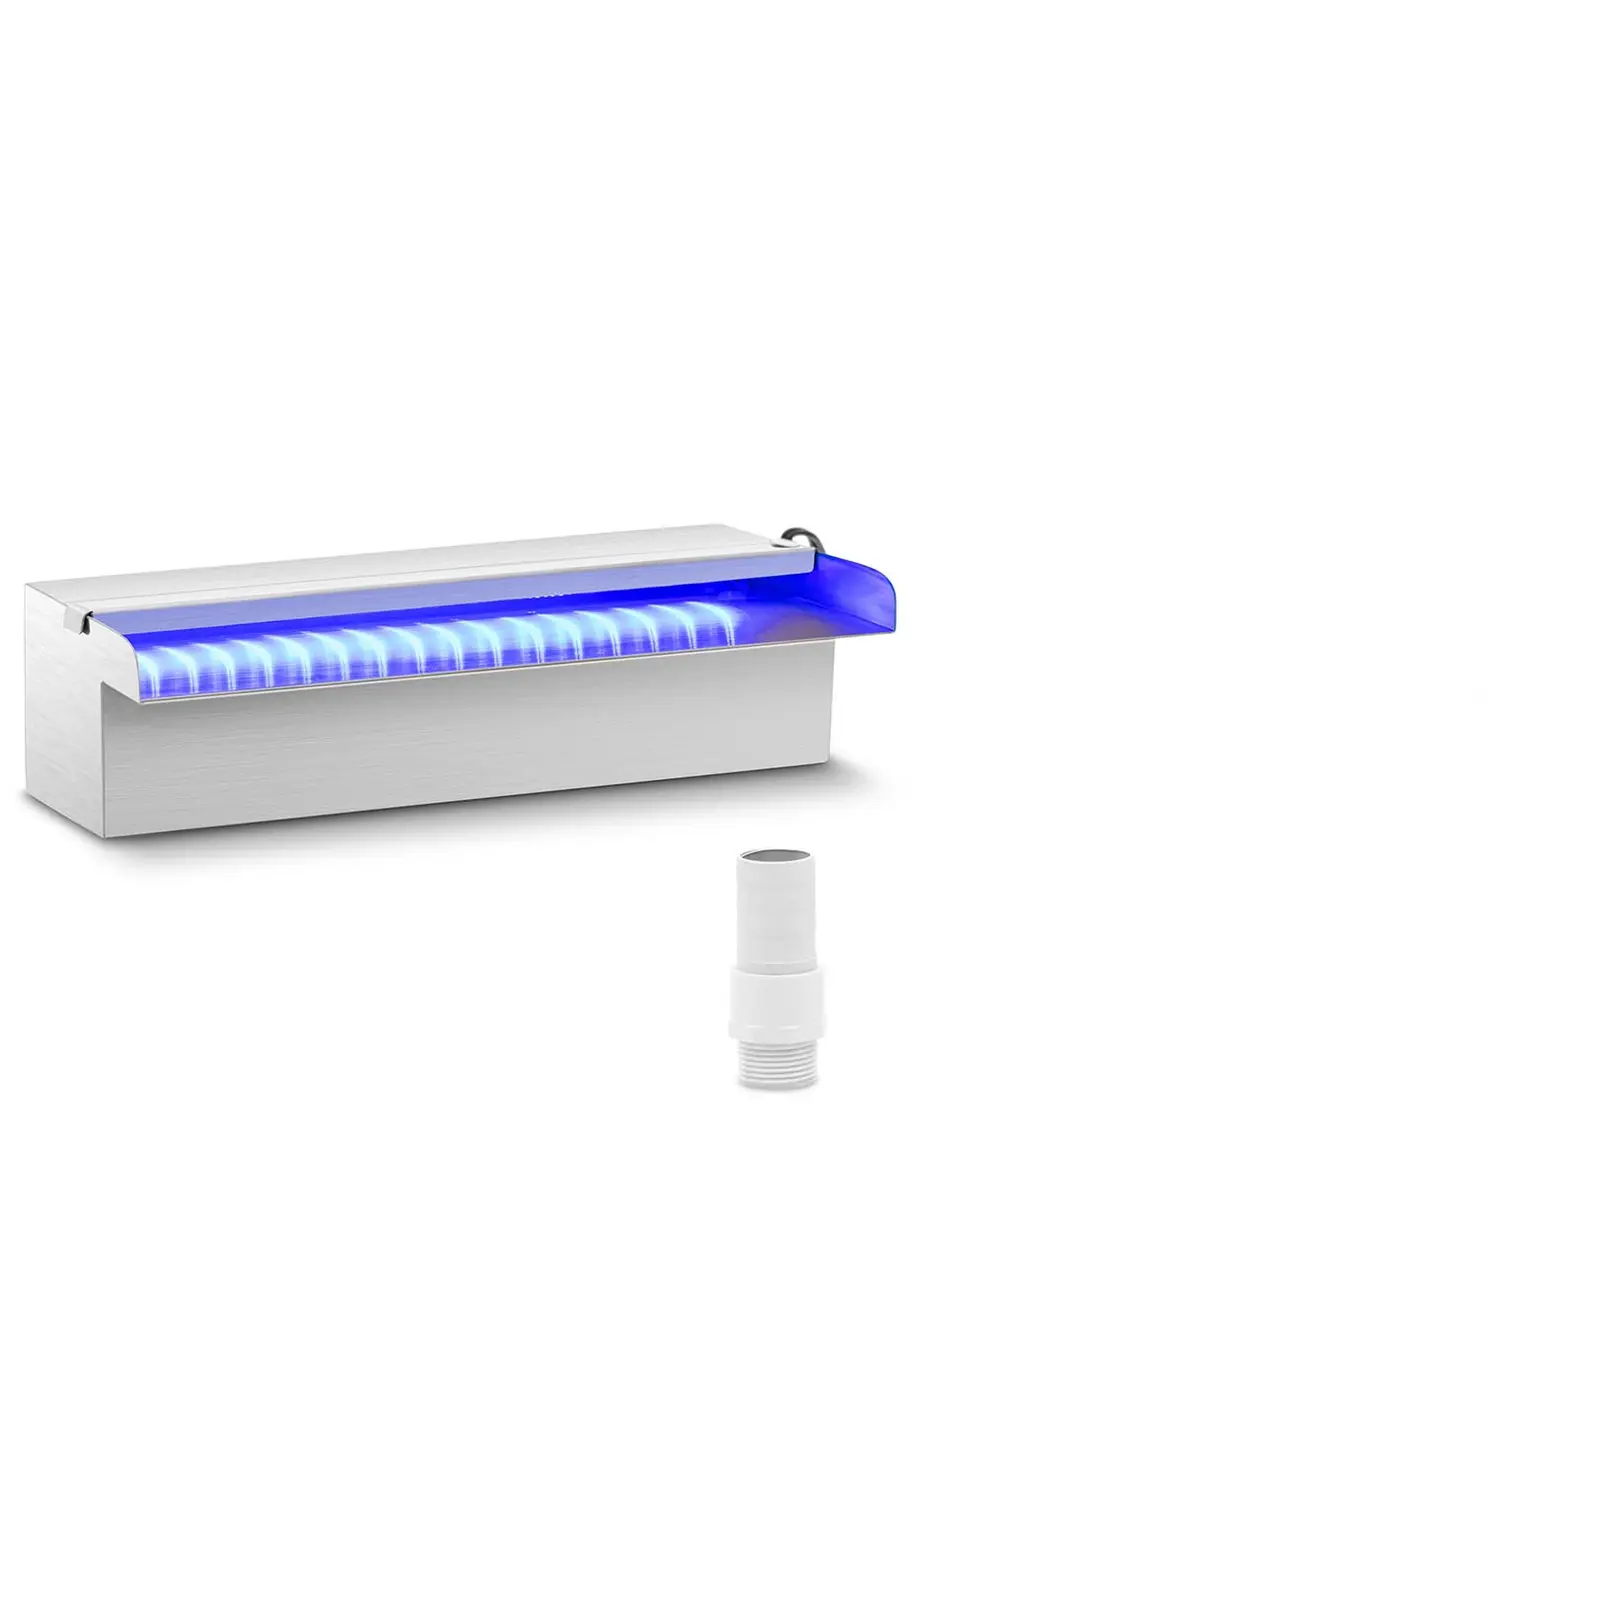 Naponski tuš - 30 cm - LED rasvjeta - Plavo/bijelo